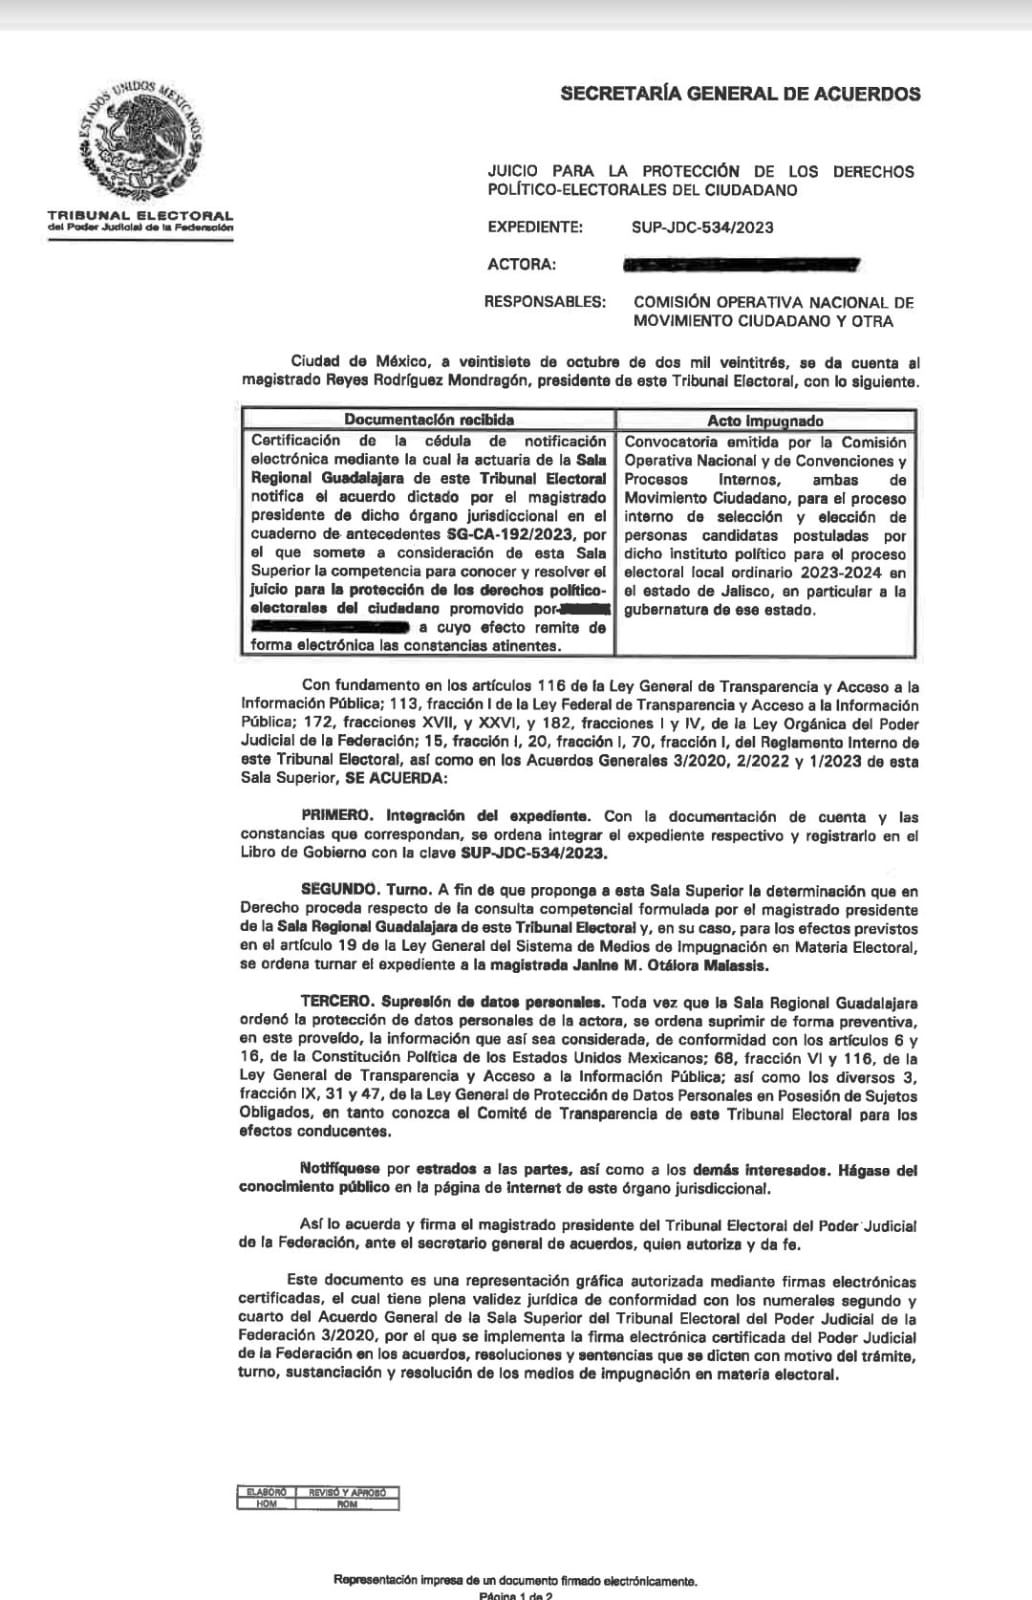 Documento de Pablo Lemus para sus derechos políticos electorales